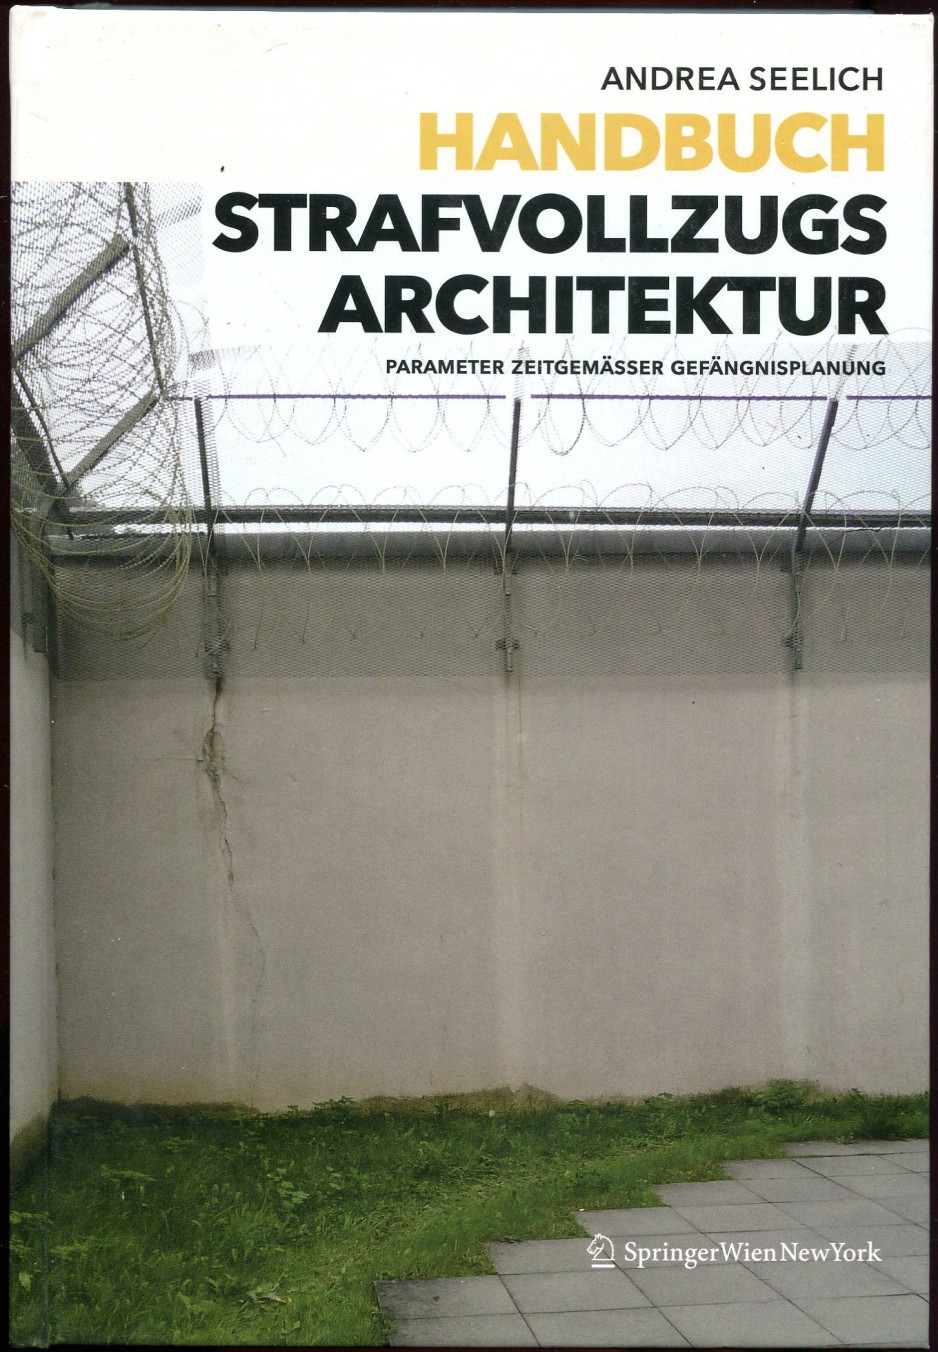 Handbuch strafvollzugs Architektur. Parameter Zeitgemässer Gefängnisplanung - Seelich, Andrea